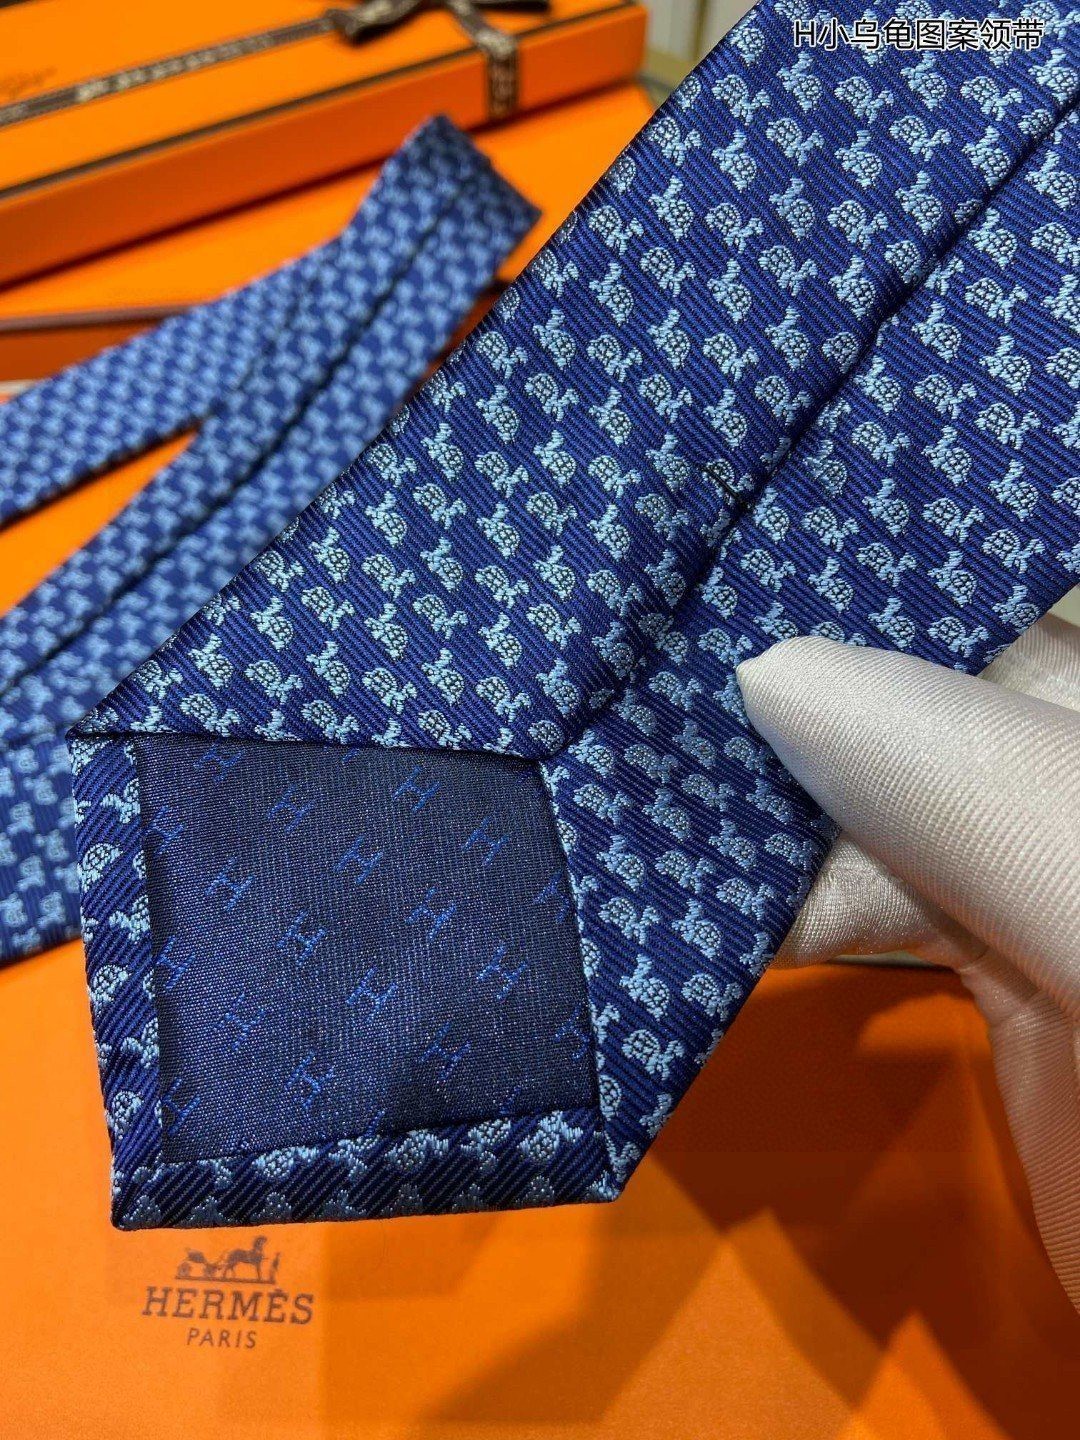 男士新款领带系列H小乌龟图案领带稀有